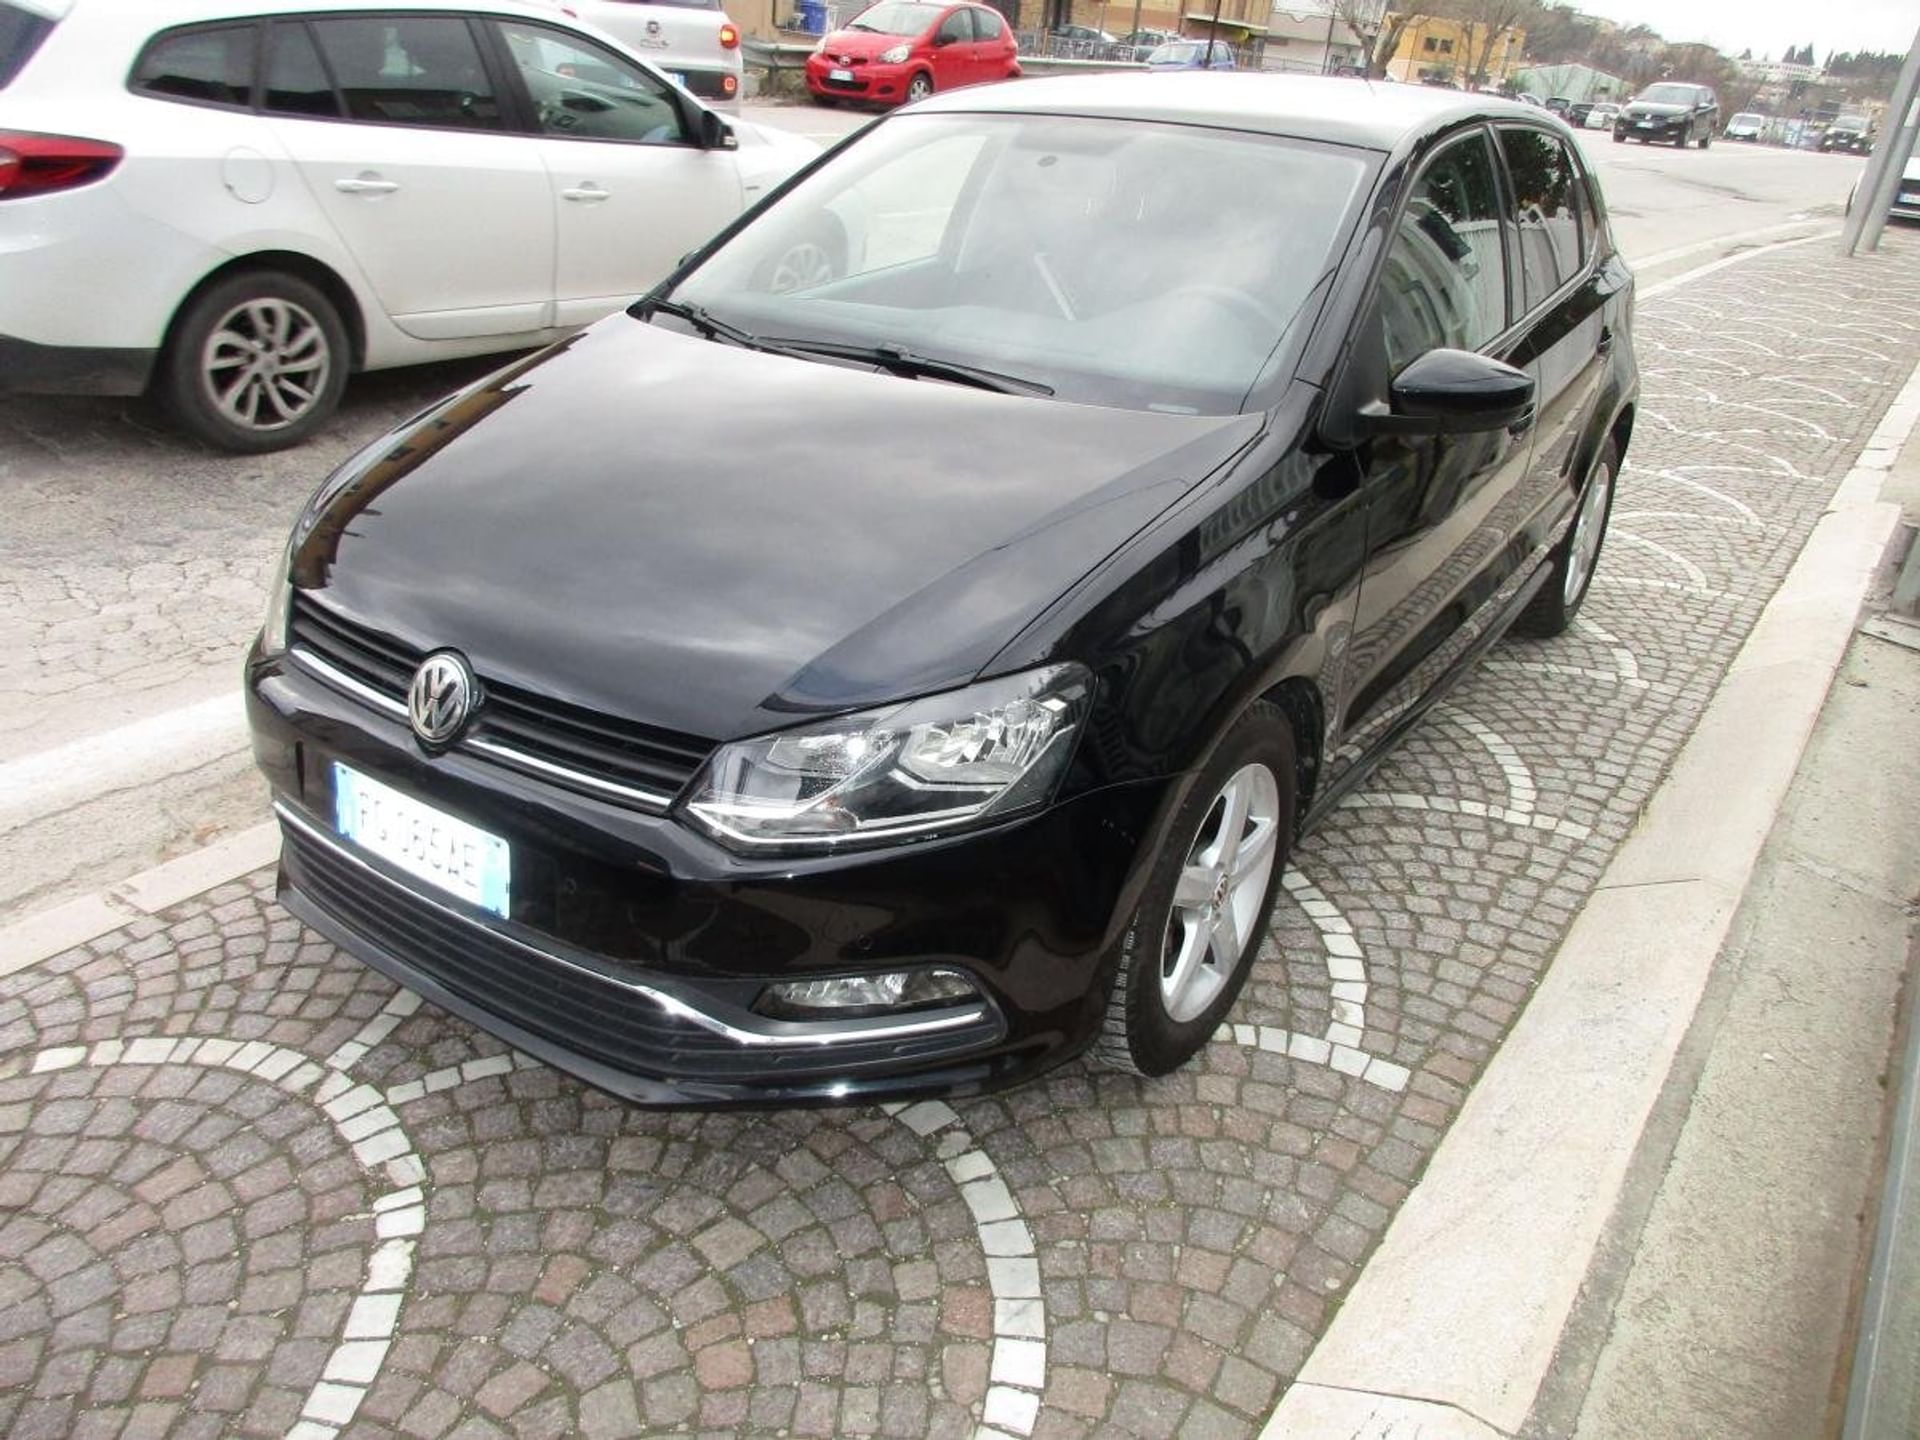 Volkswagen Polo 1.4